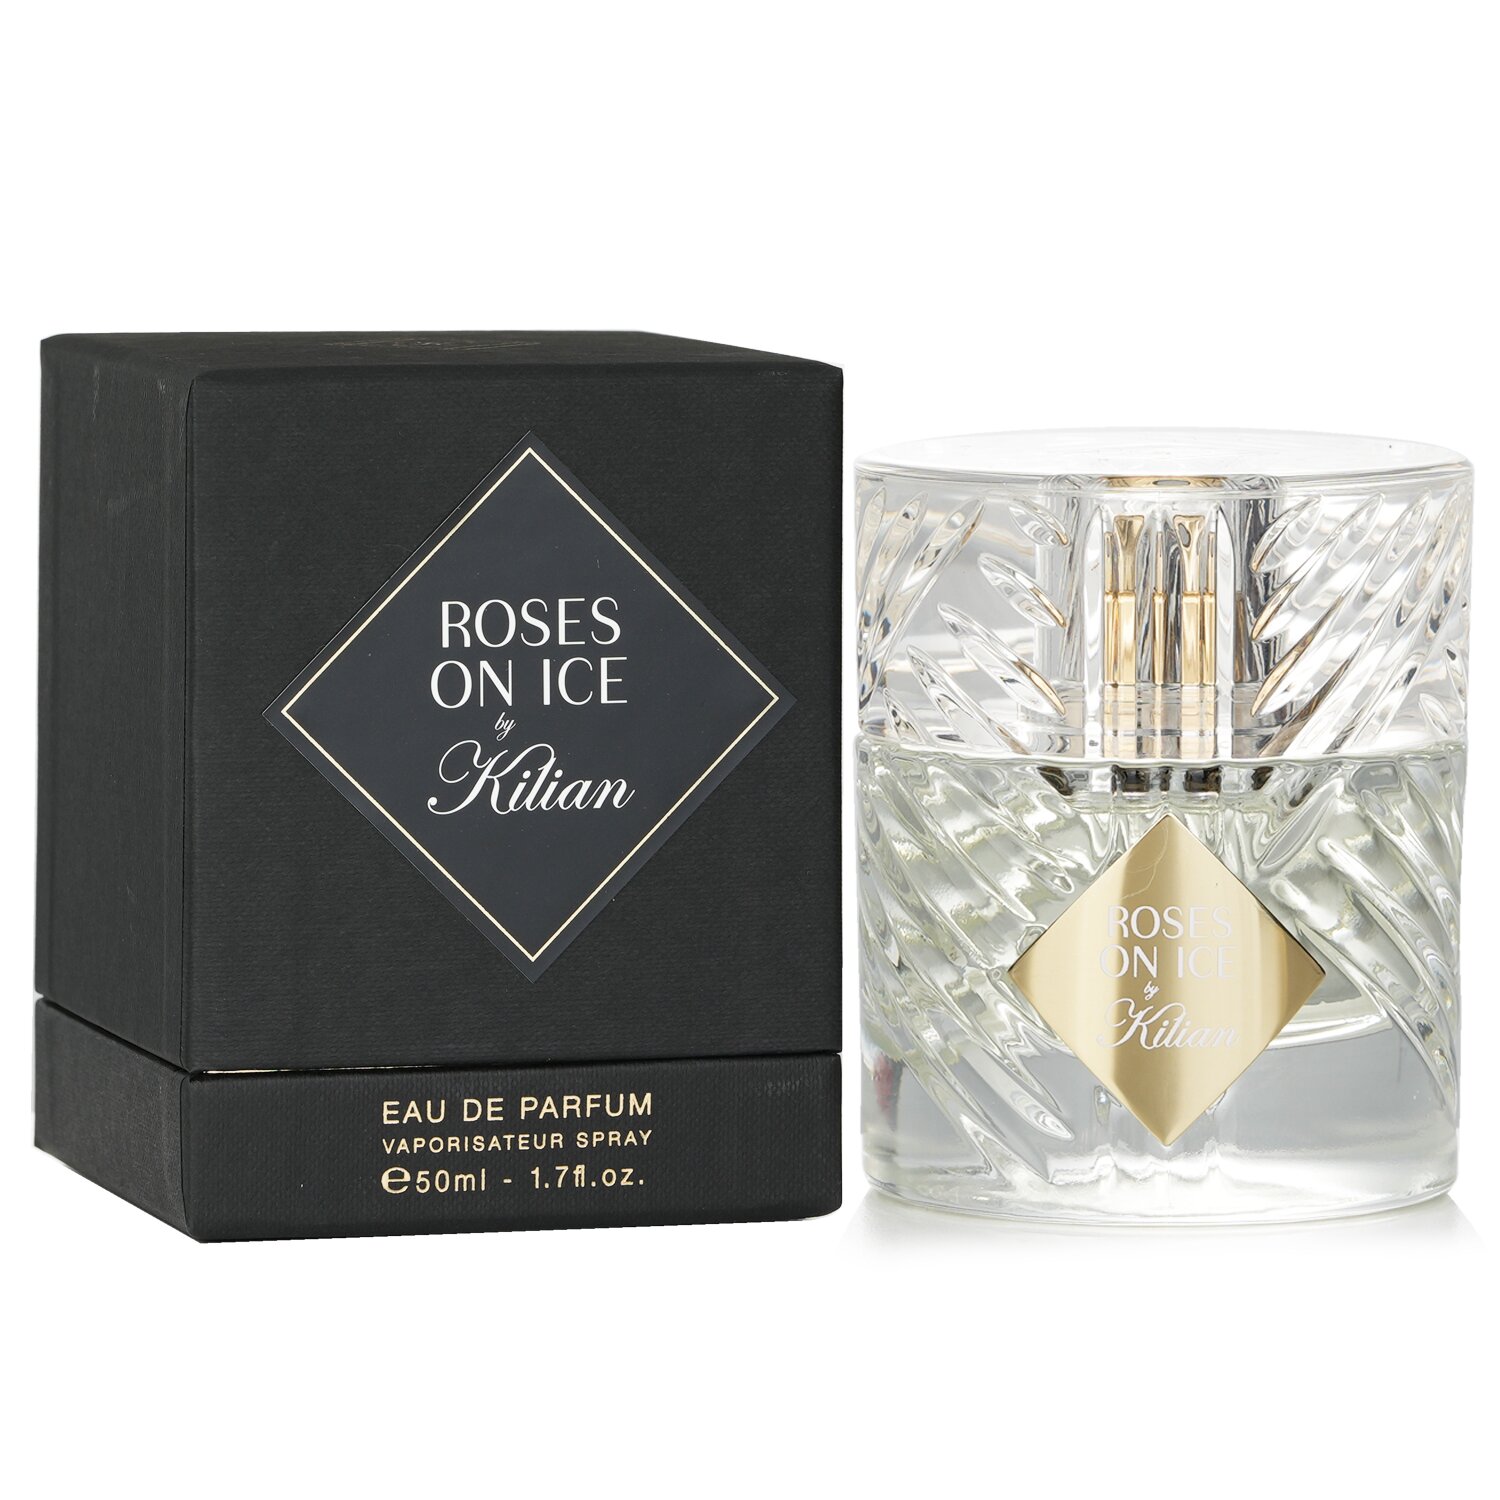 Kilian Roses On Ice Eau De Parfum Spray 50ml/1.7oz